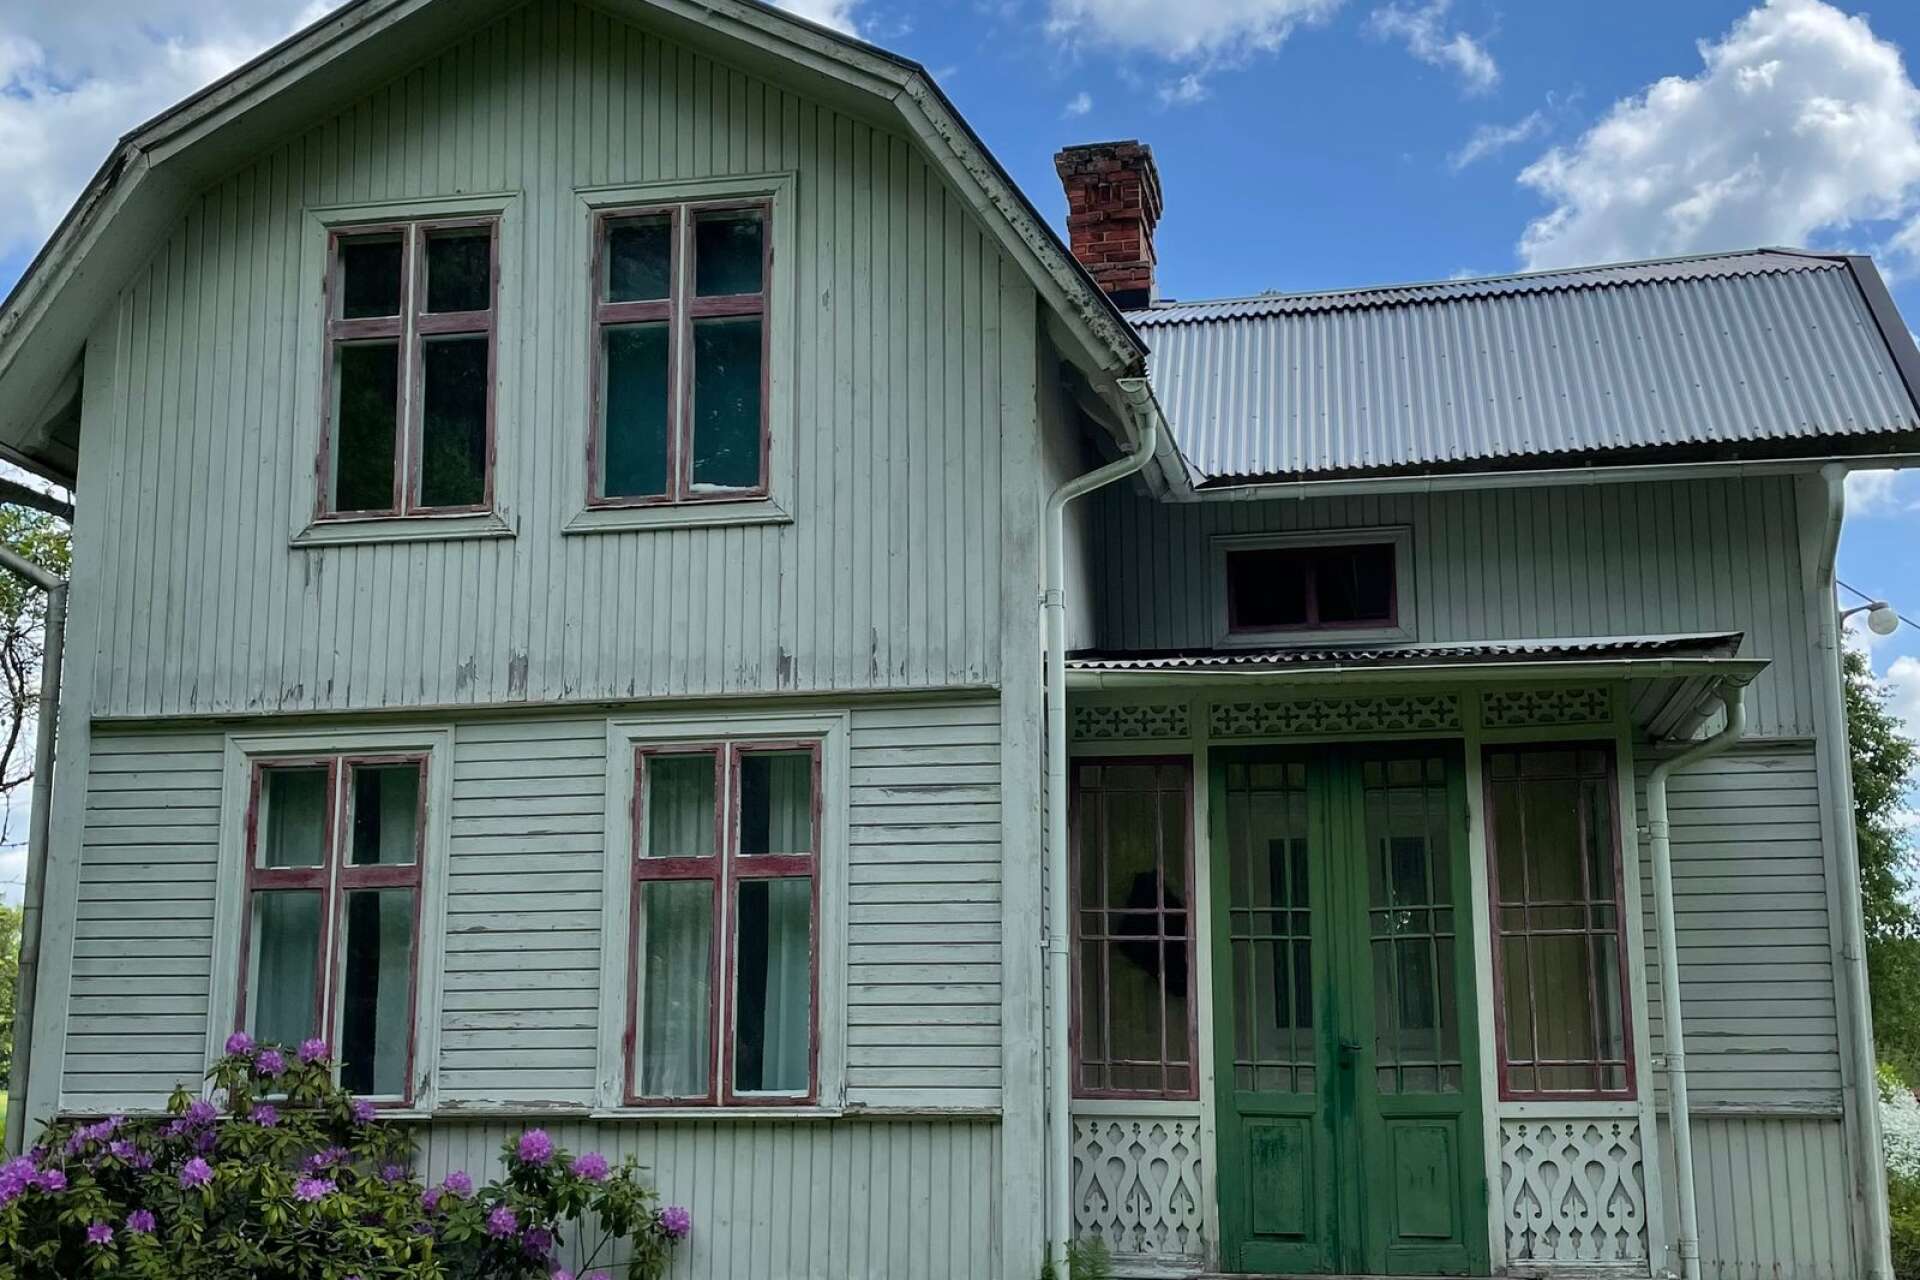 Ett yngre par från Bromma har köpt detta hus och vill renovera det till ursprunget.